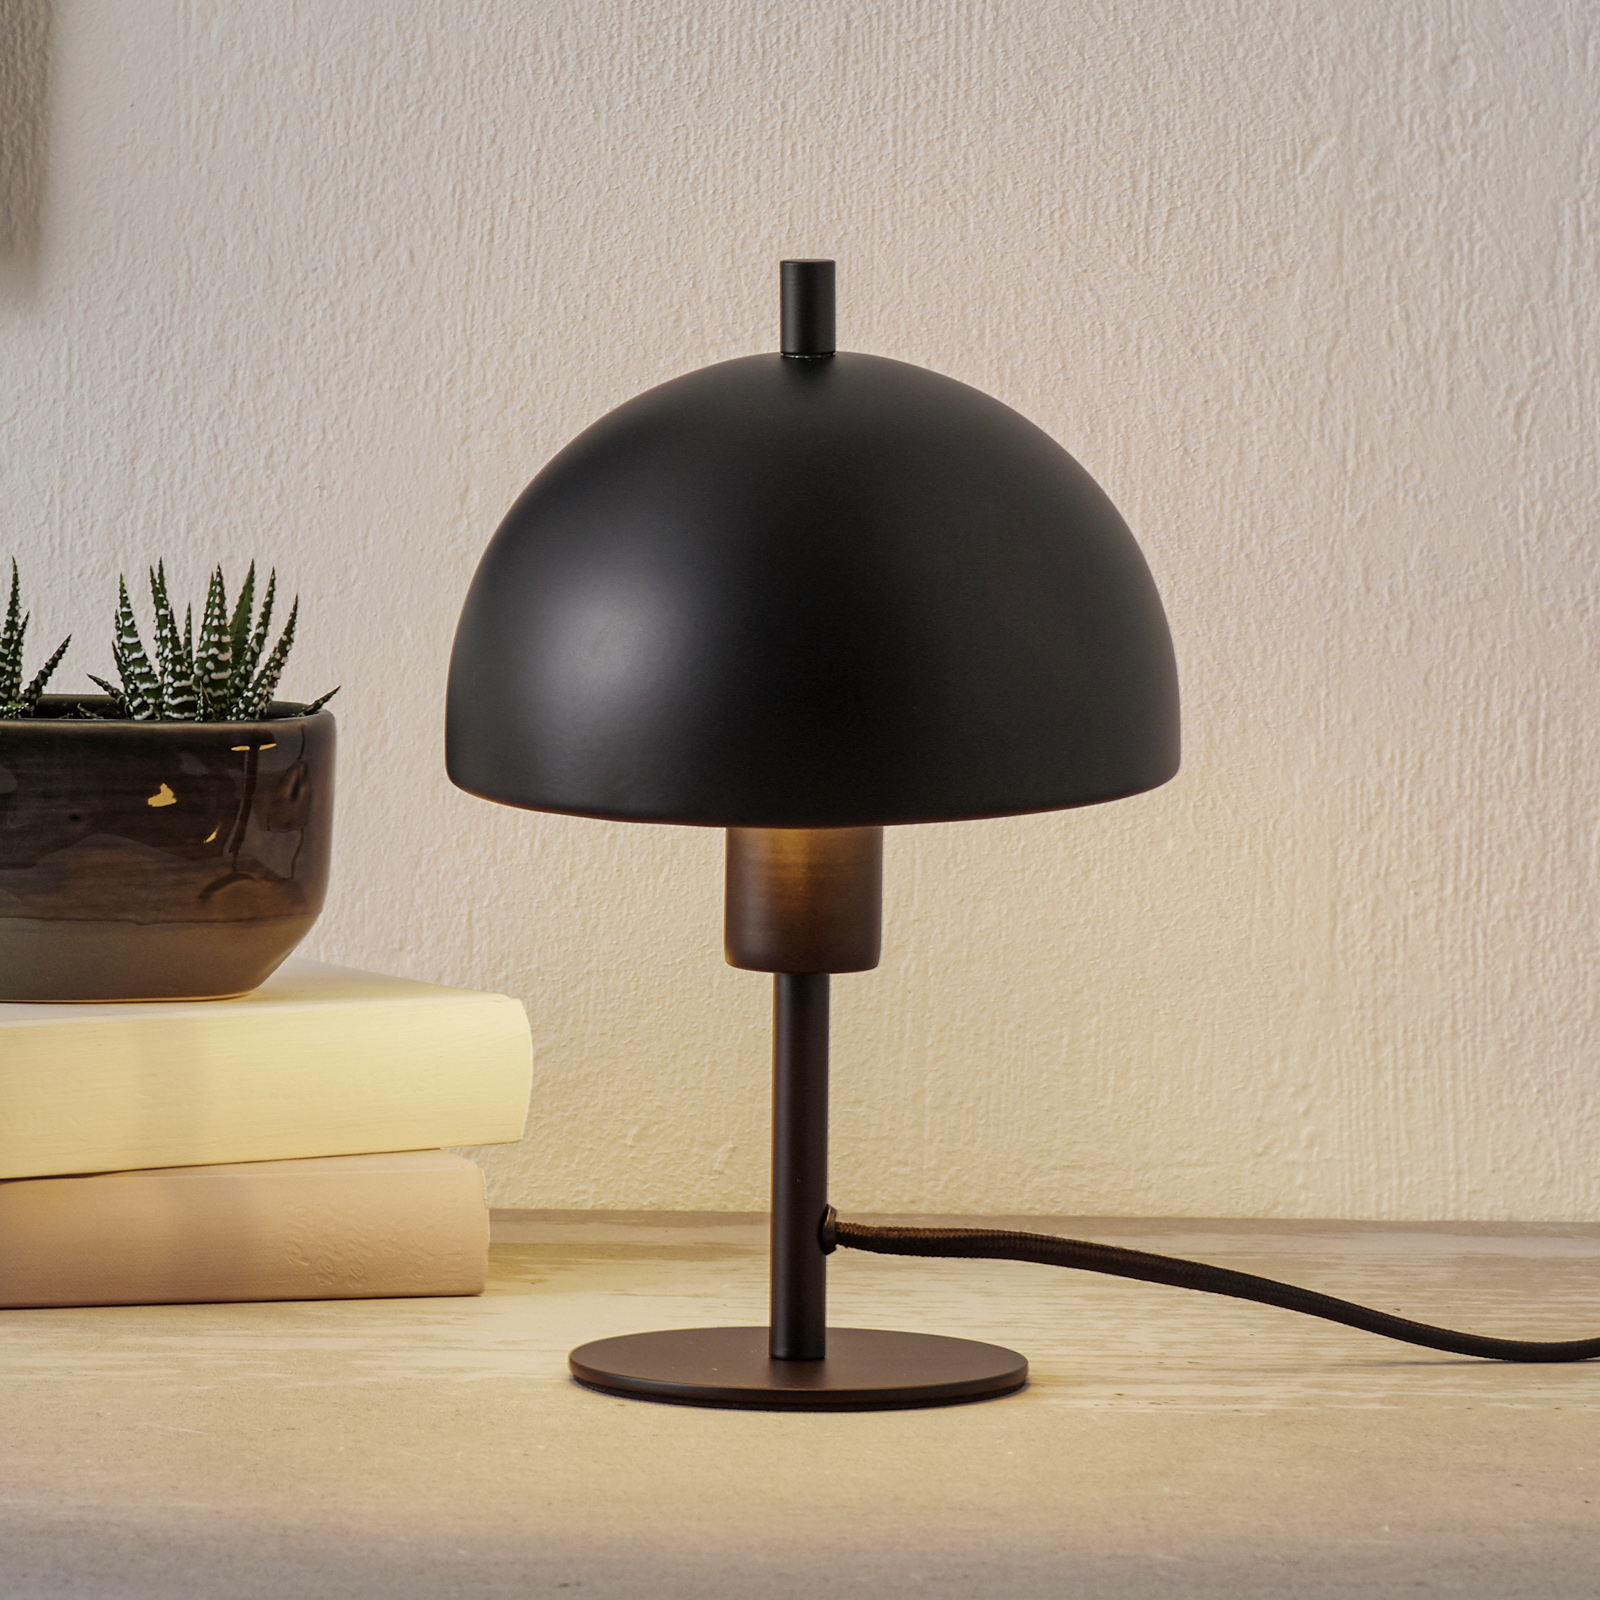 Schöner Wohnen Kia bordlampe, svart, høyde 24 cm